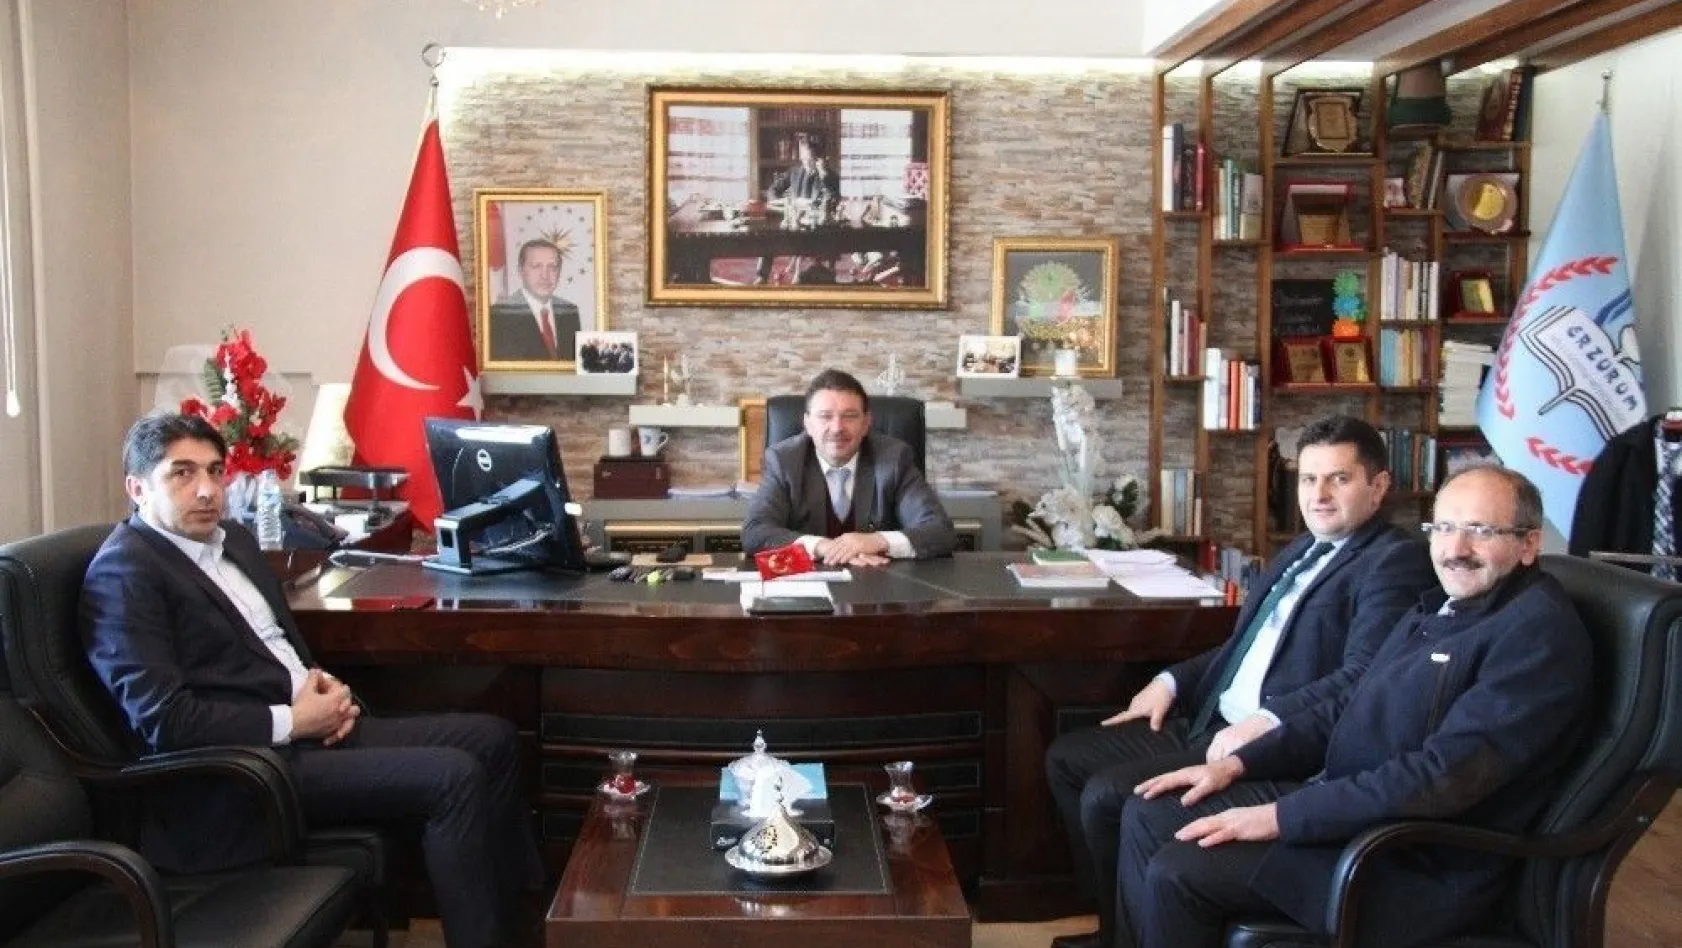 Yeşilay Cemiyeti Erzurum Şube Başkanı Salih Kaygusuz'dan Yıldız'a ziyaret
